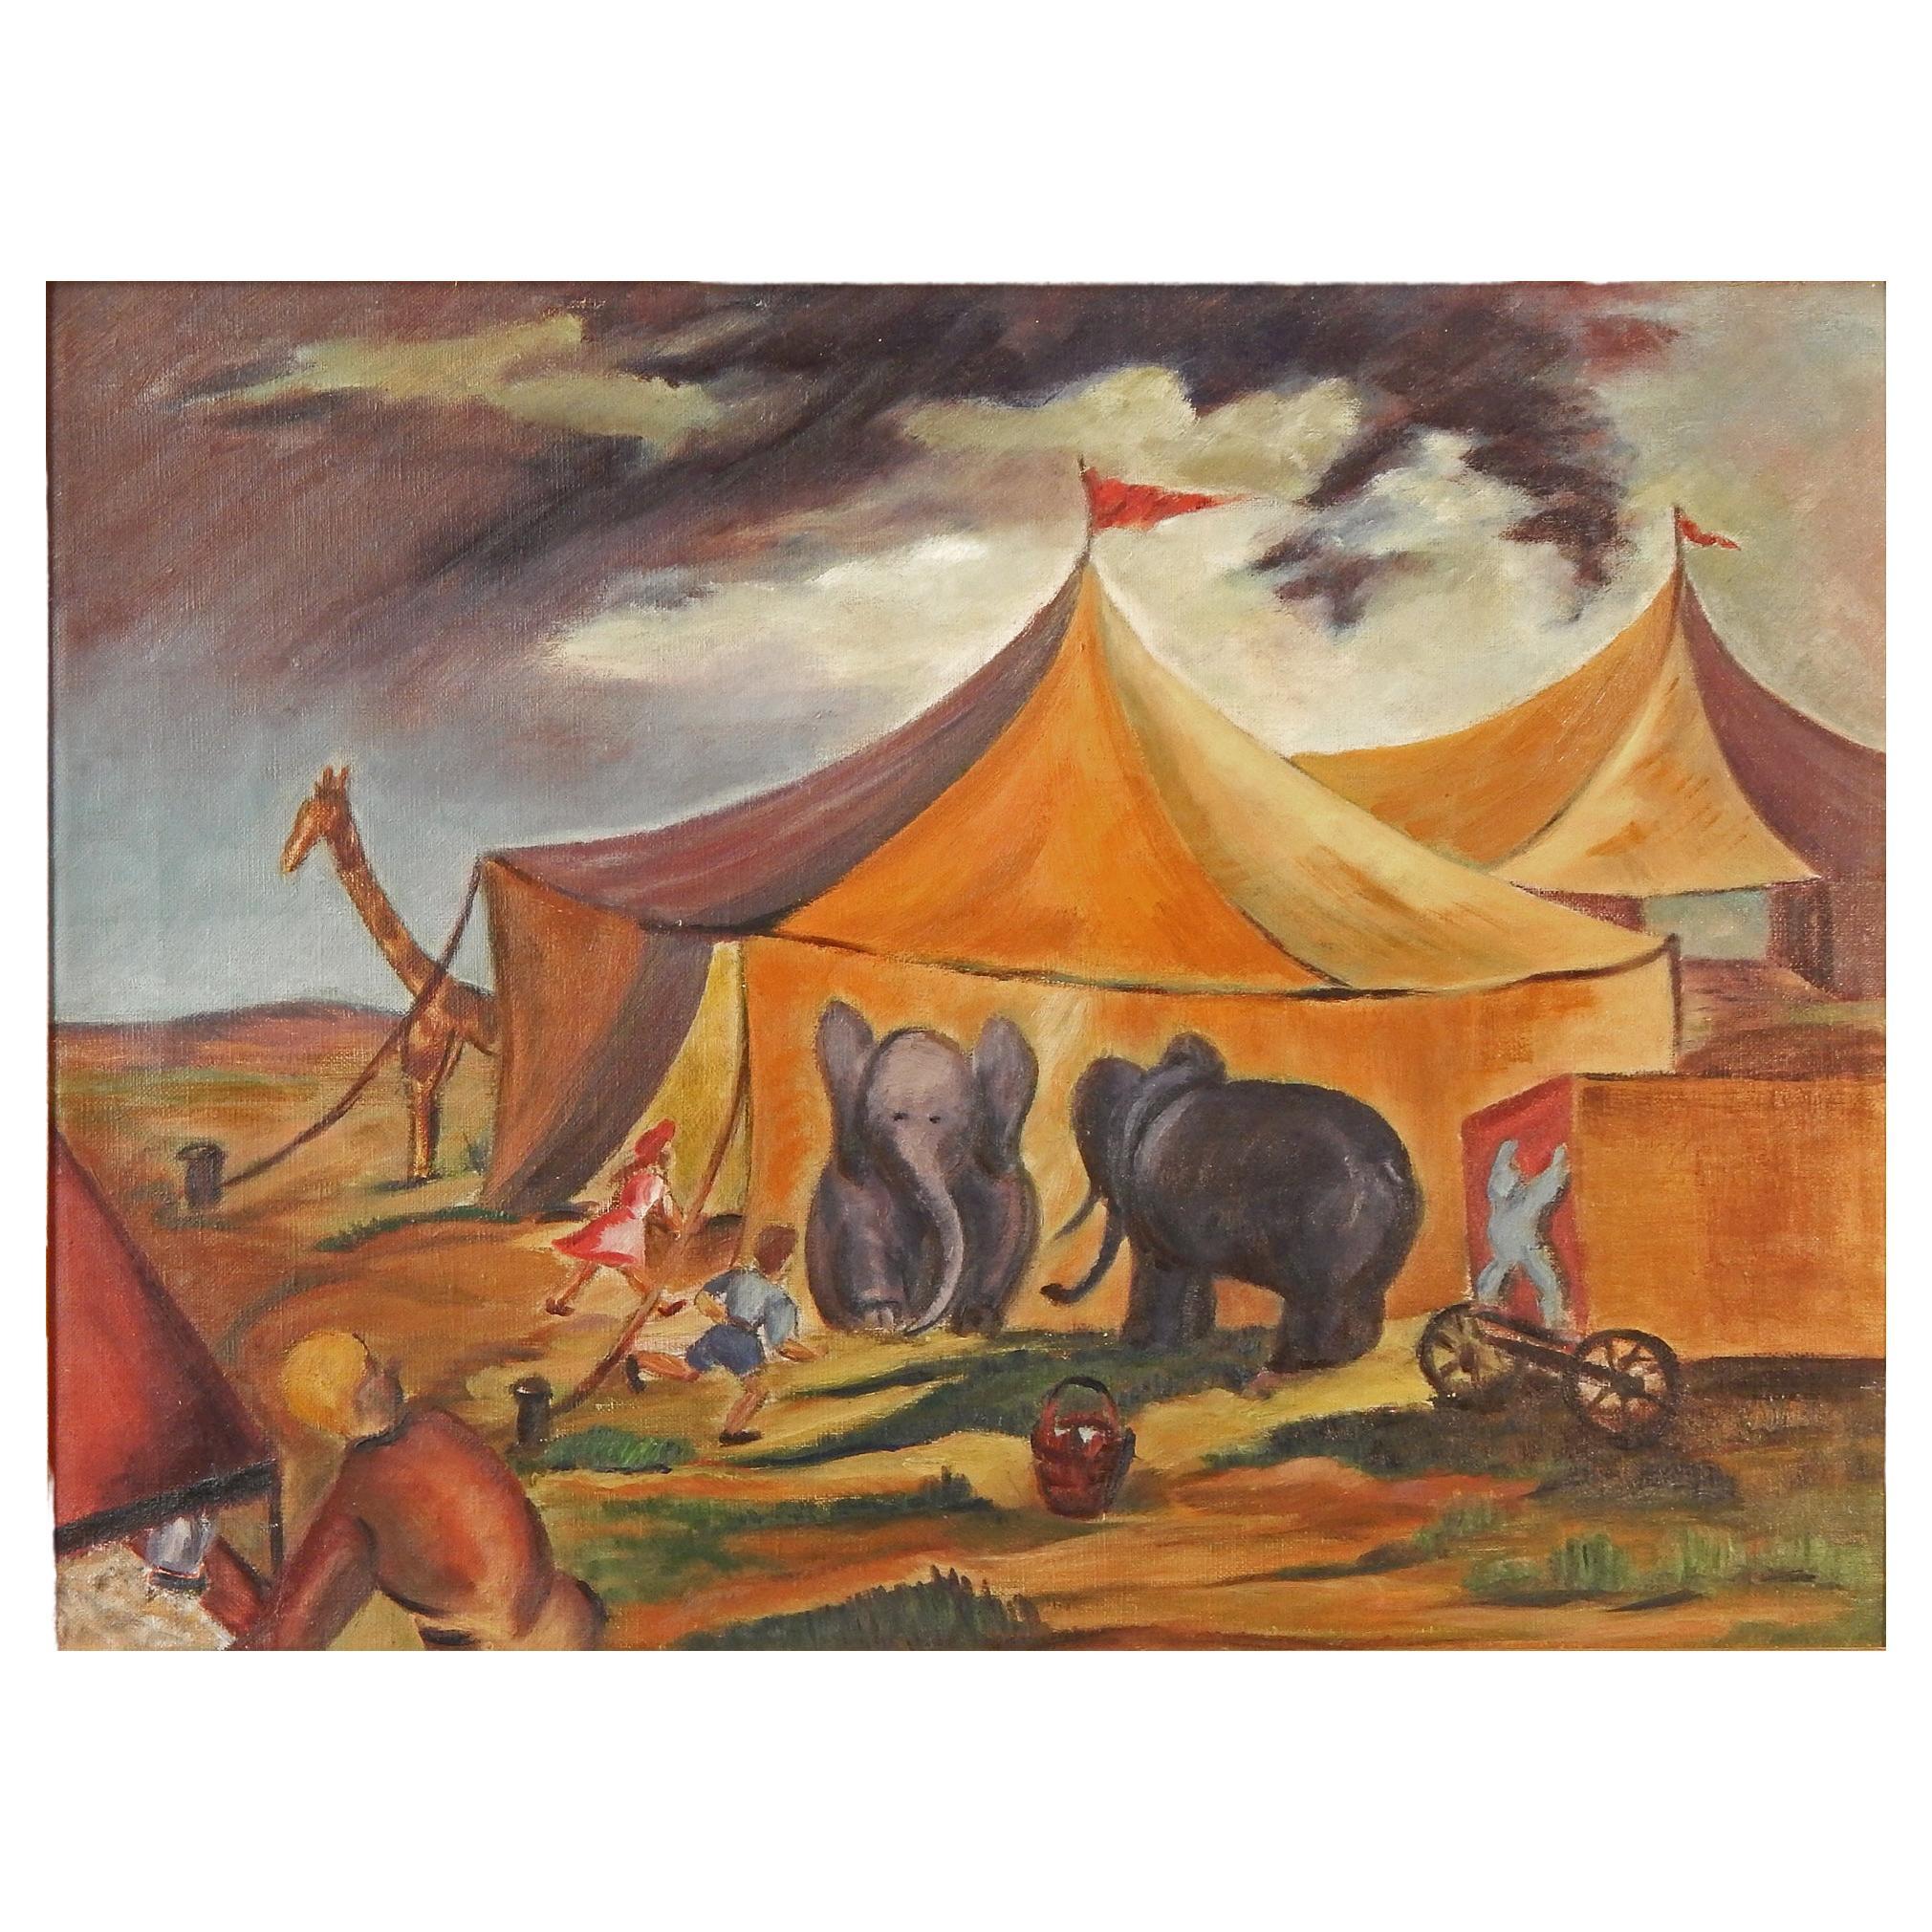 "Circus est en ville, peinture réaliste sociale avec éléphants et girafe